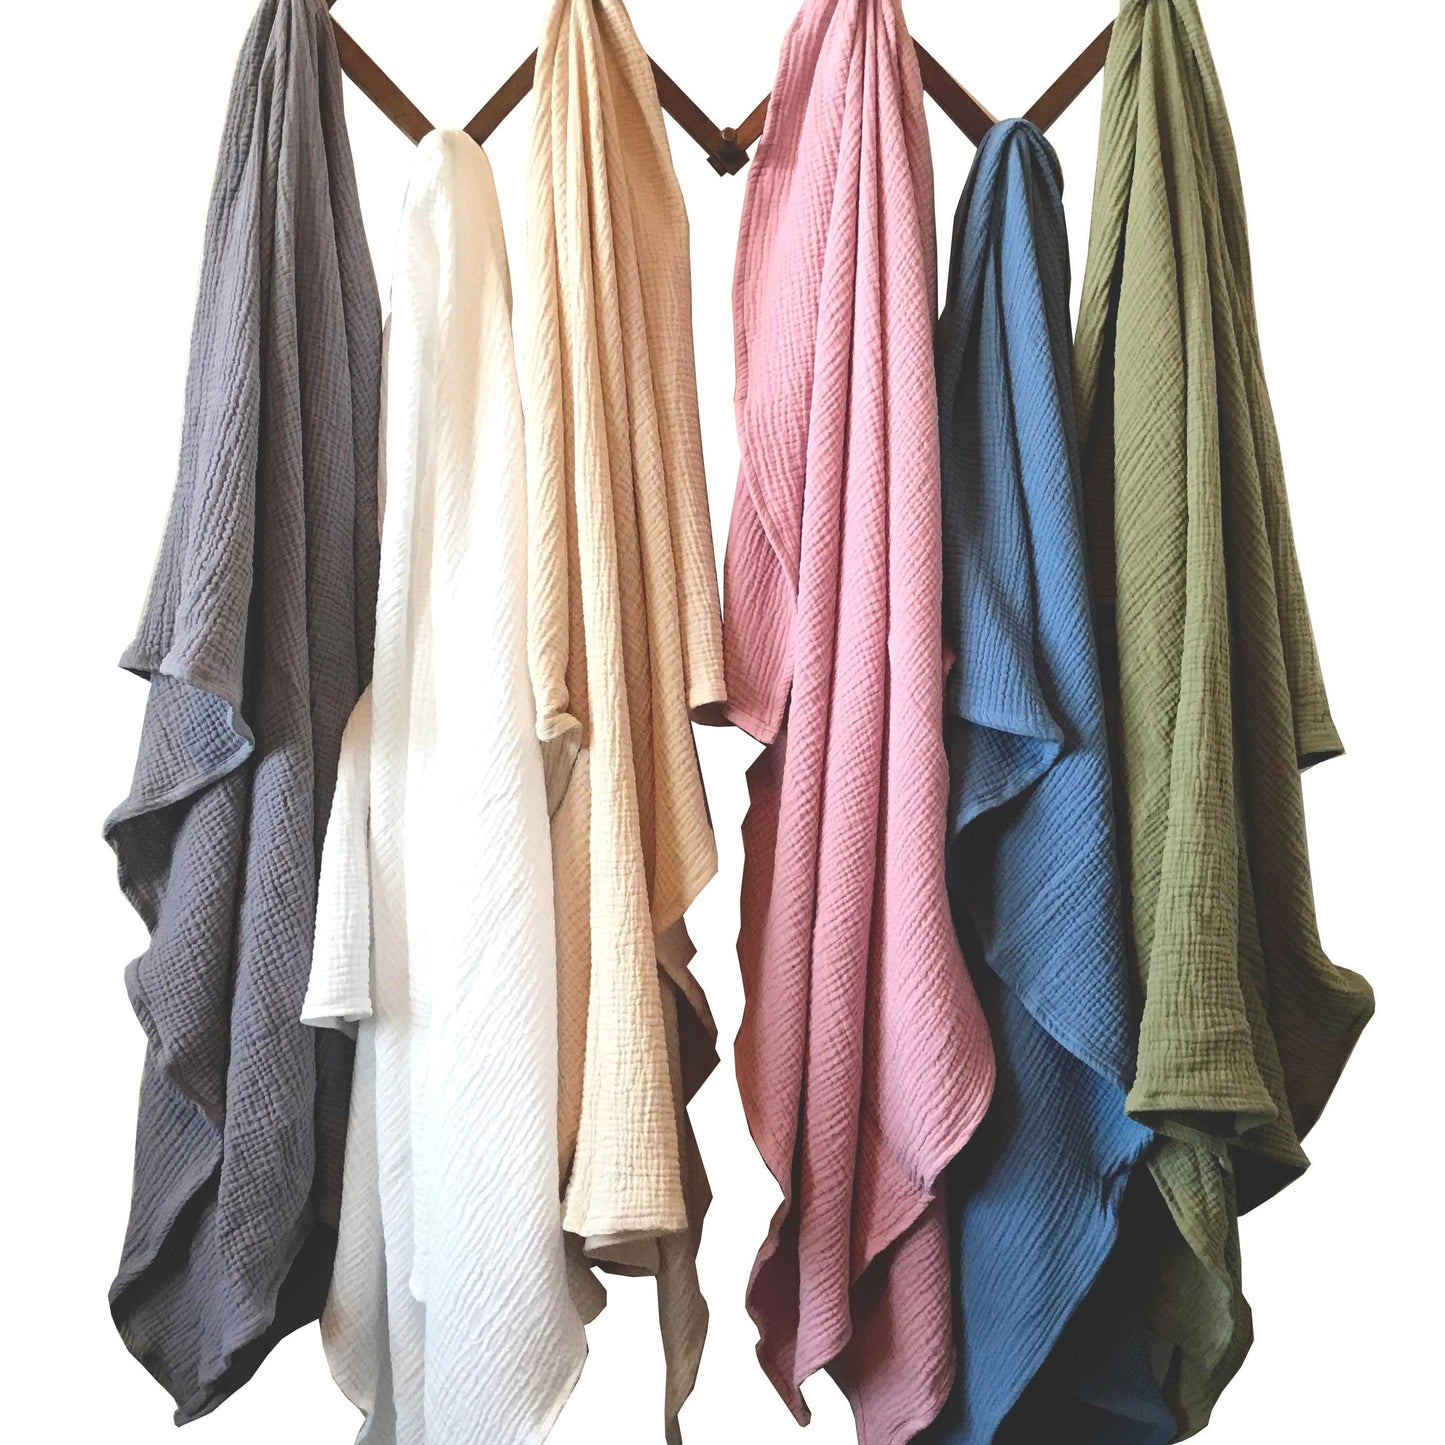 Baby Blanket - 2 Layers of Double Organic Cotton Gauze - 55 x 55